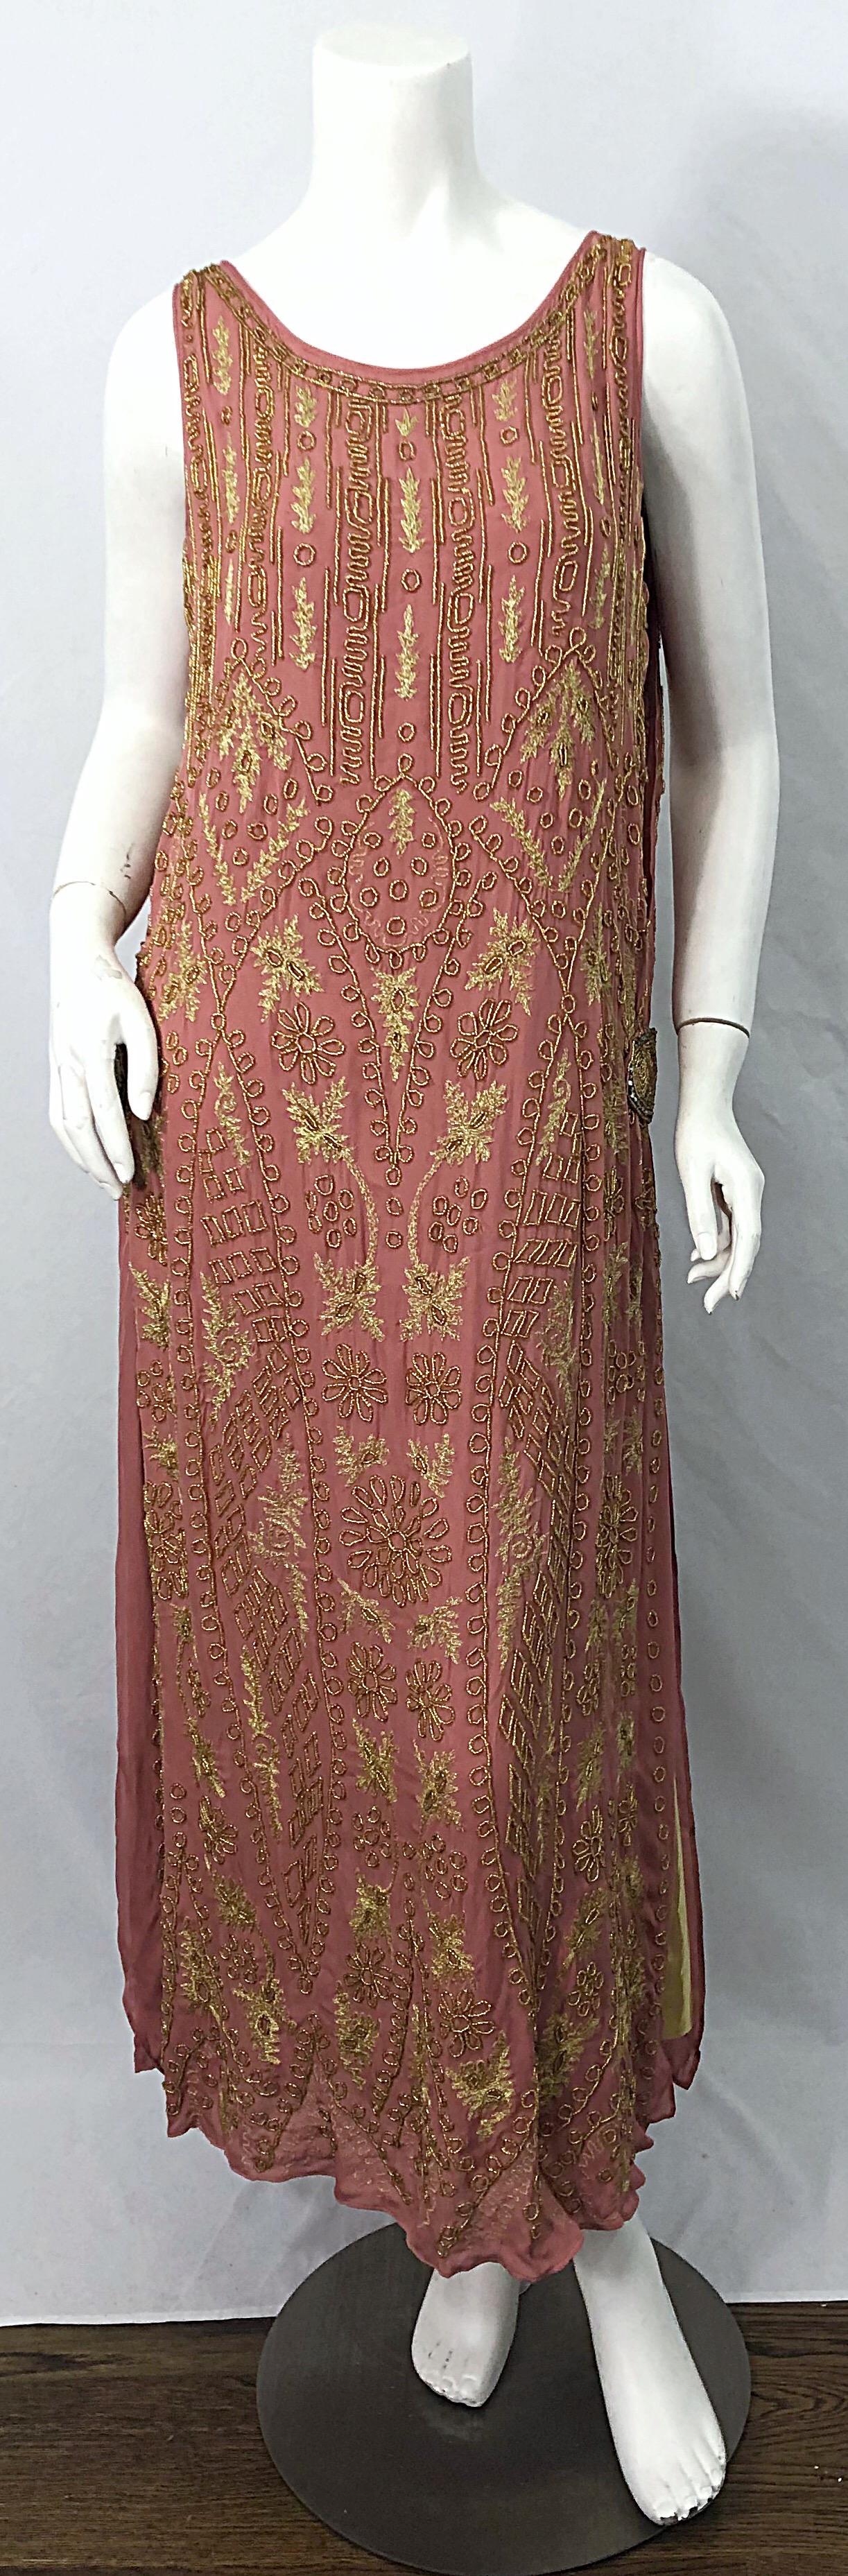 Phénoménale robe de couture française des années 1920, rose et perles dorées, de style Gatsby ! Le plus beau rose du monde, avec des panneaux dorés à chaque extrémité. Boucles en strass sur chaque hanche. Il suffit de l'enfiler sur la tête. Broderie